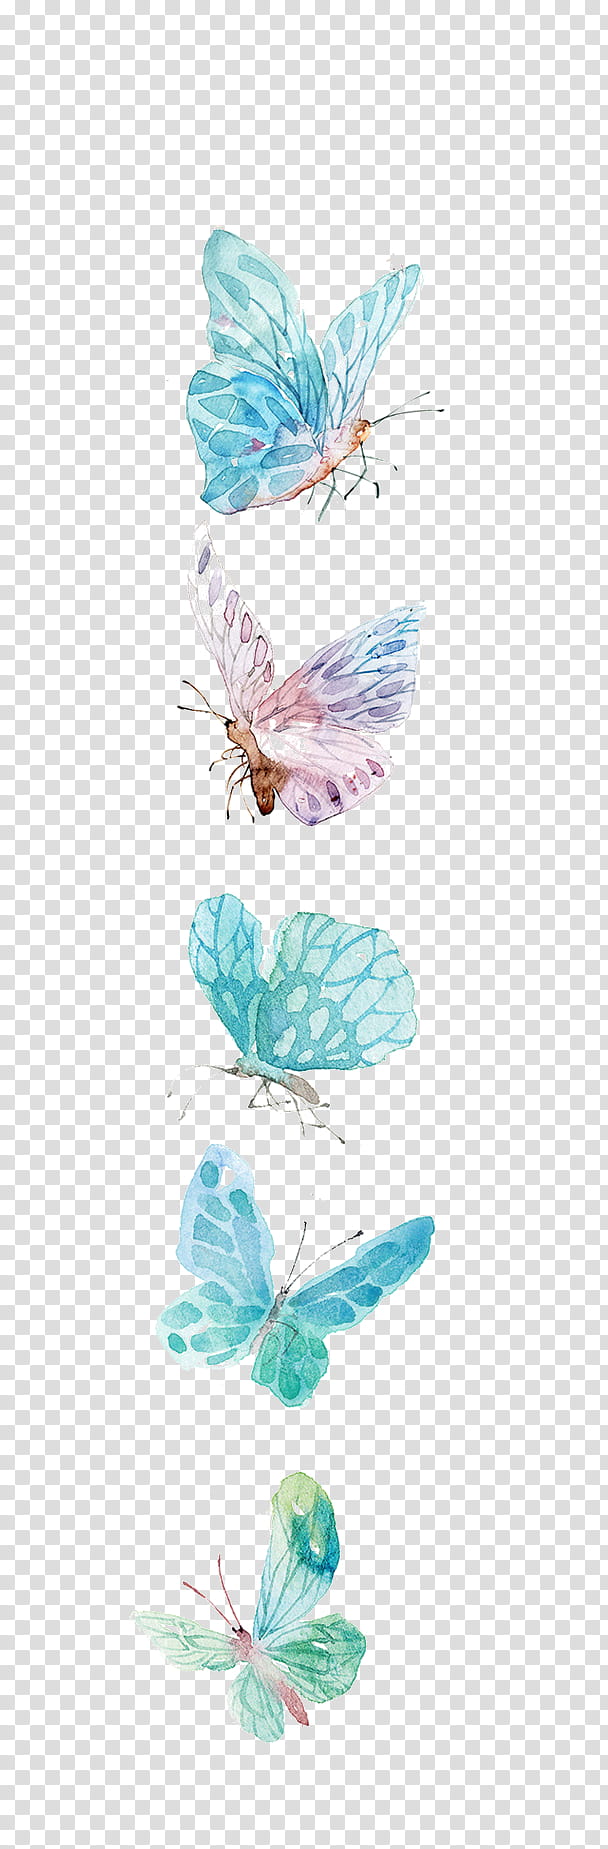 five butterflies cartoon transparent background PNG clipart